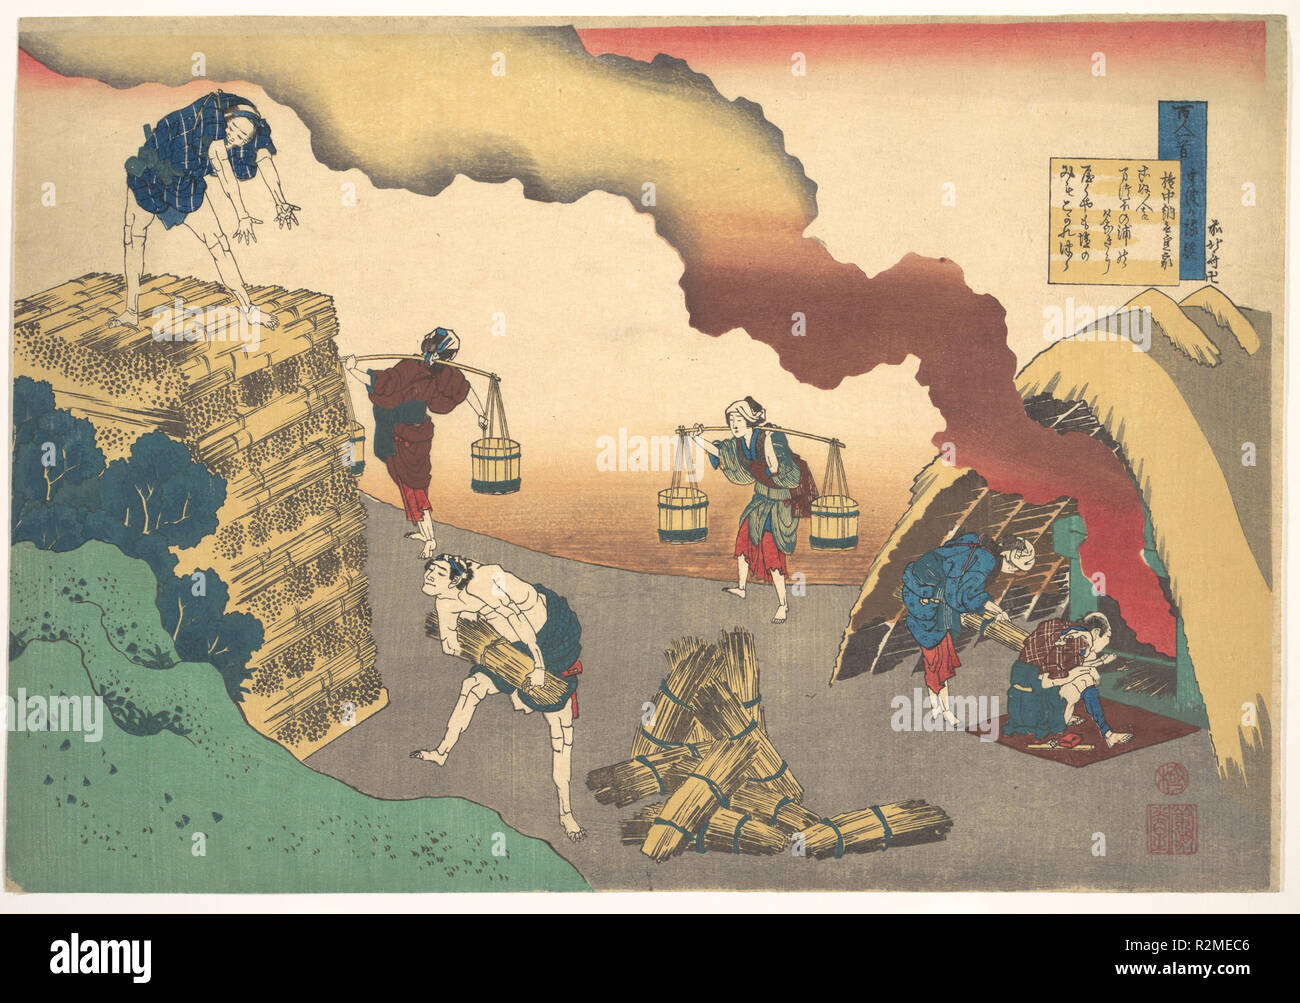 Poema de Gon-Chunagon Sadaie, de la serie cien poemas explicó la Enfermera (hyakunin isshu uba ga etoki). Artista: Katsushika Hokusai (japonés, Tokio (Edo) Tokio Edo (1760-1849). Cultura: Japón. Dimensiones: 10 1/4 x 15 in. (26 x 38,1 cm). Fecha: 1760-1849. Una de las impresiones más dramáticos del Hokusai libera la emoción fuerte comprimido en esta sola estrofa por Gochunagon (Teika Fujiwara Sadaie, 1162-1241): Konu hito tan Matsuho no ura no yuu nagi ni yaku ya mo shiho no mi mo kogaretsutsu esperando que no venga mi pasión quemaduras como los incesantes incendios debajo Foto de stock